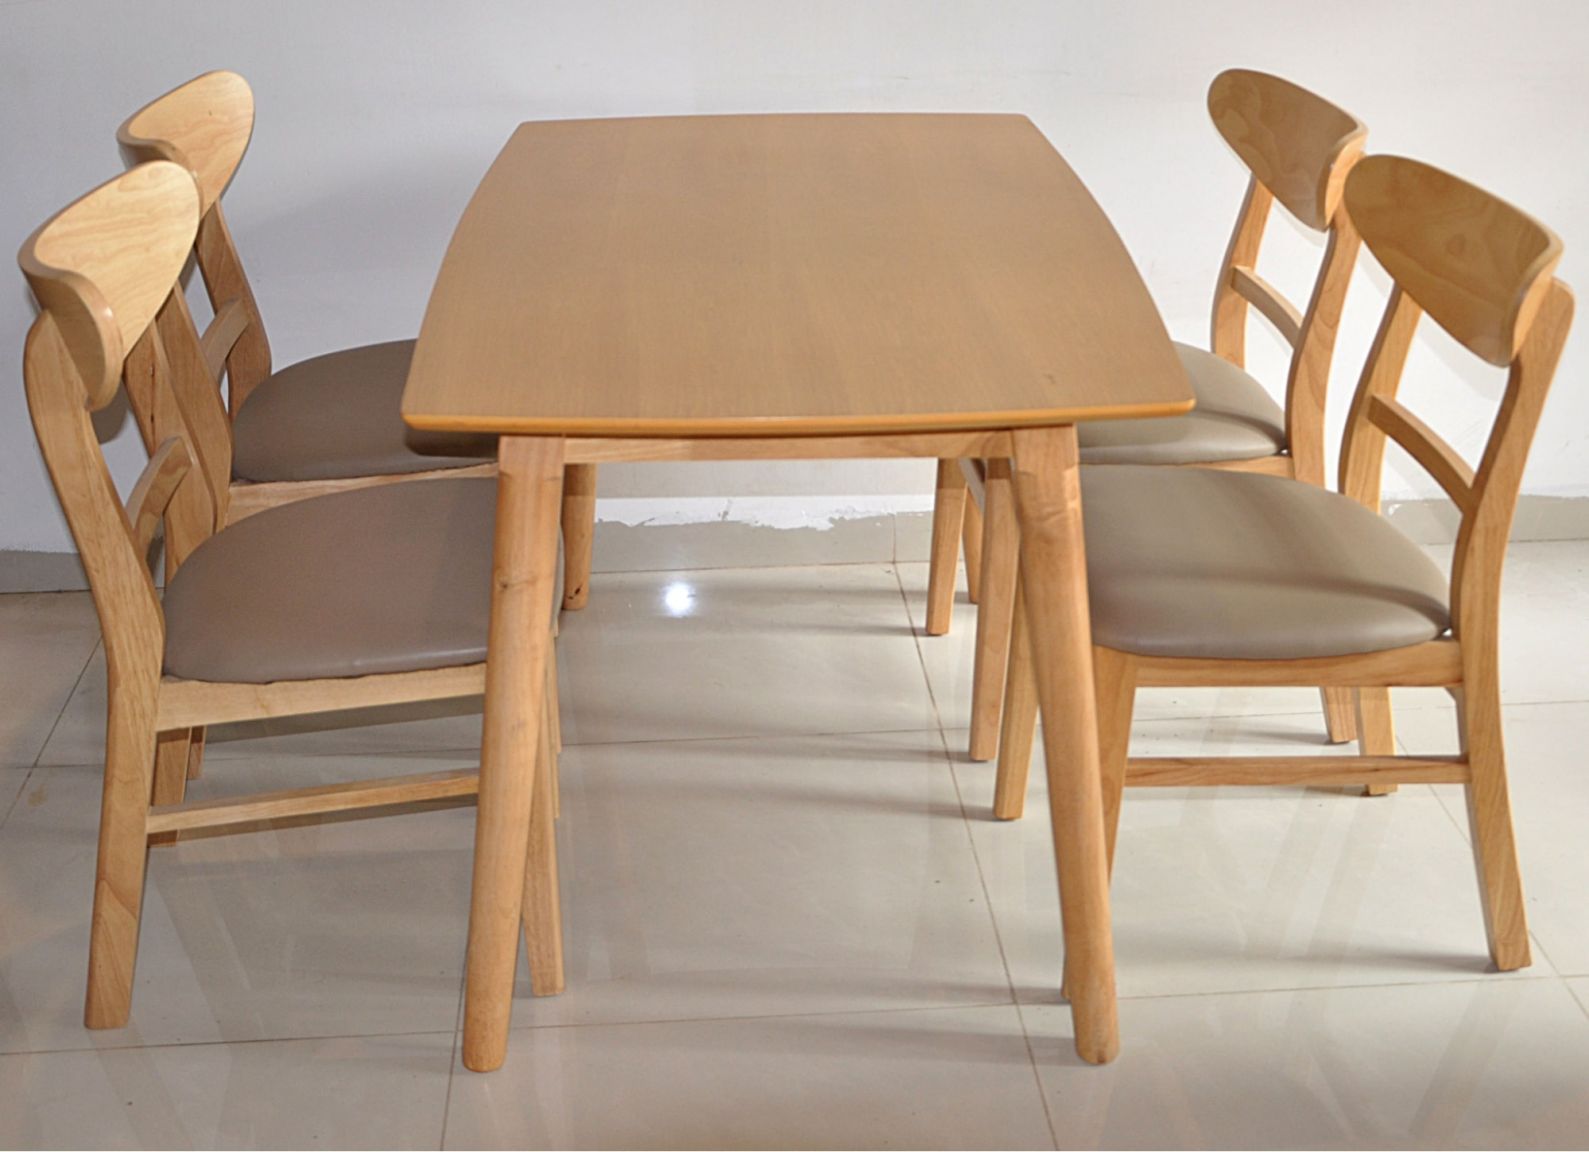 Bộ bàn ghế gỗ phòng khách 7 triệu bằng gỗ tần bì cao cấp